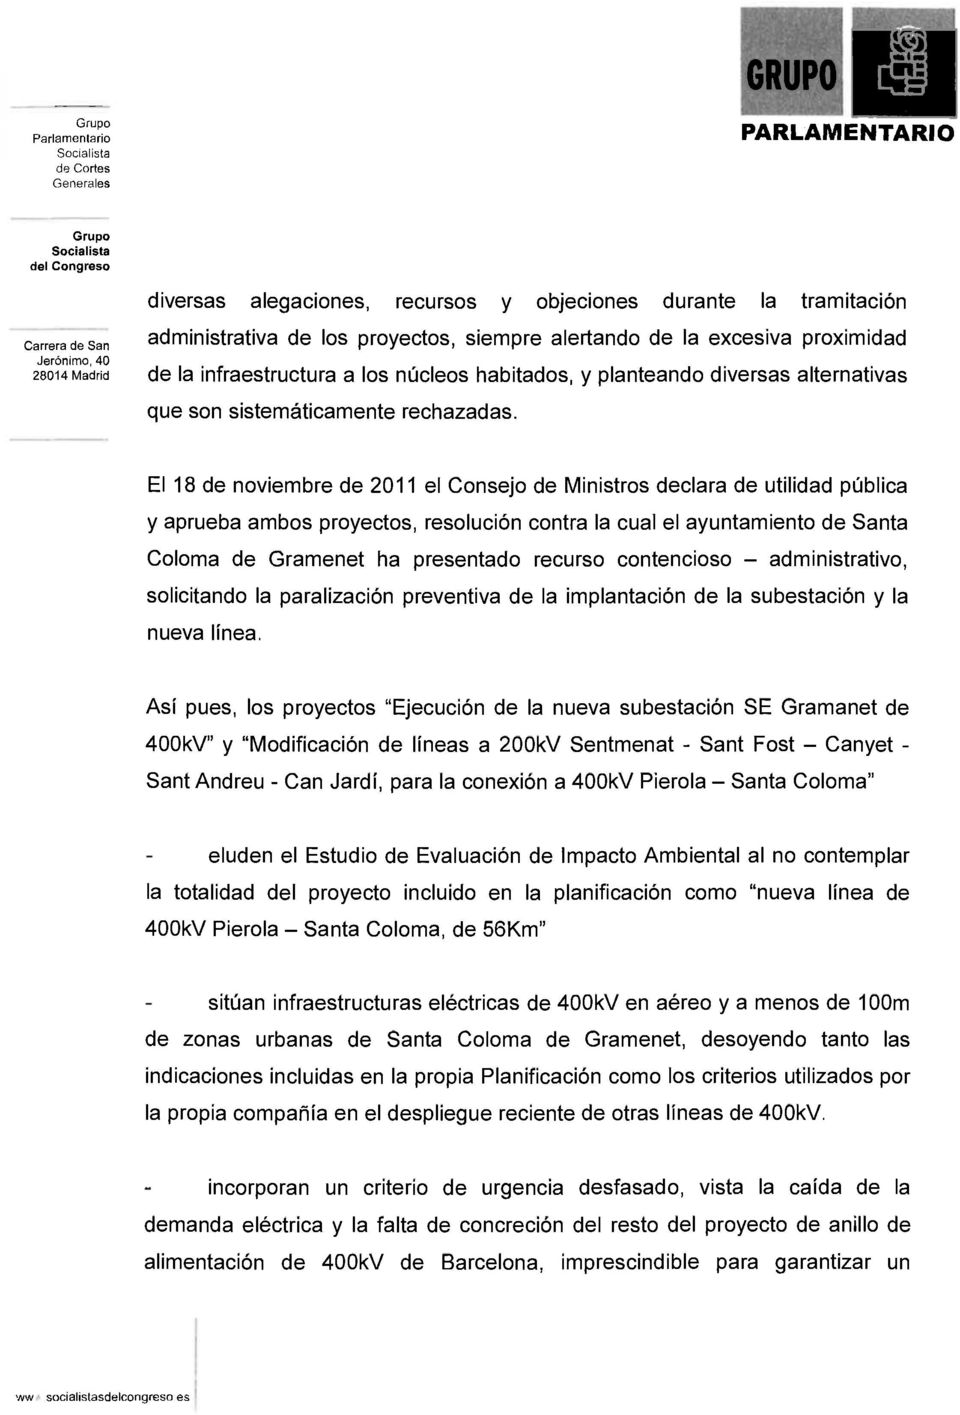 El 18 de noviembre de 2011 el Consejo de Ministros declara de utilidad pública y aprueba ambos proyectos, resolución contra la cual el ayuntamiento de Santa Coloma de Gramenet ha presentado recurso